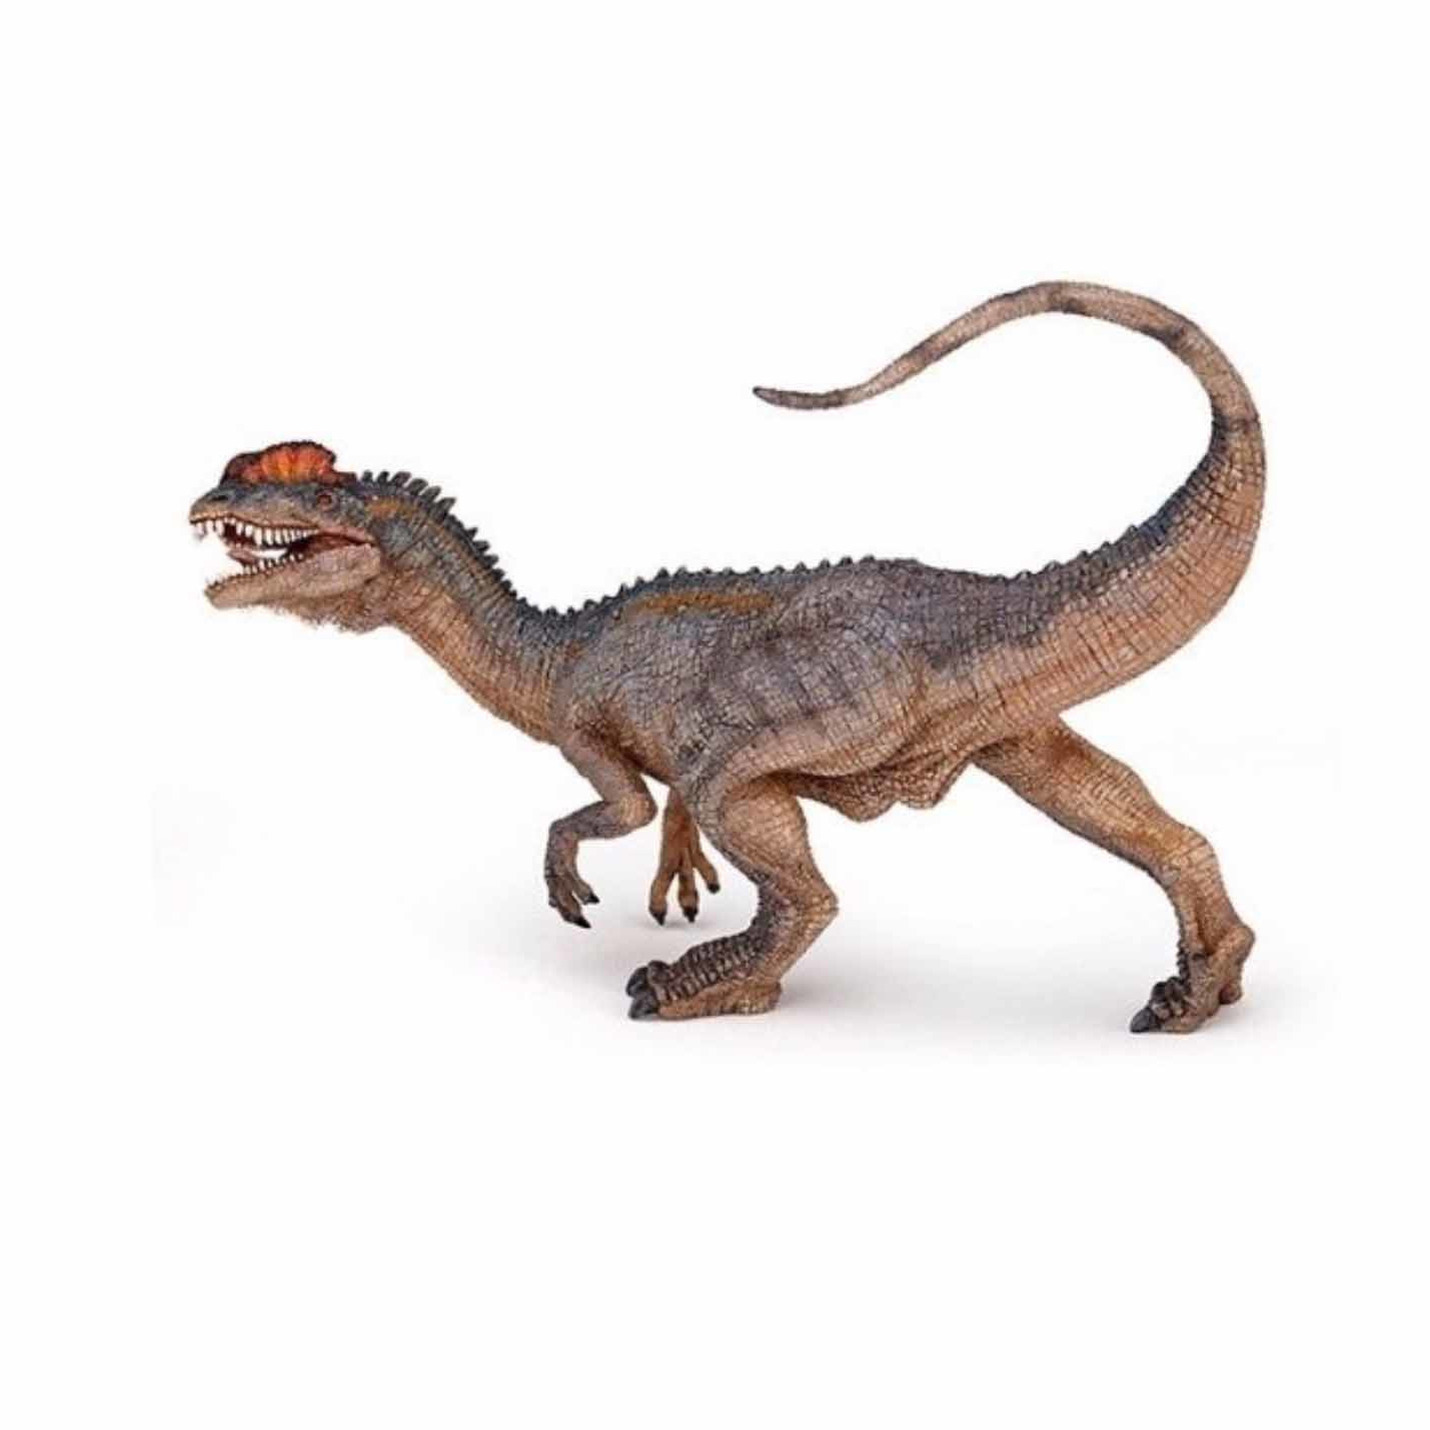 Afbeelding Plastic speelfiguur dilophosaurus dinosaurus 4,5 cm door Animals Giftshop